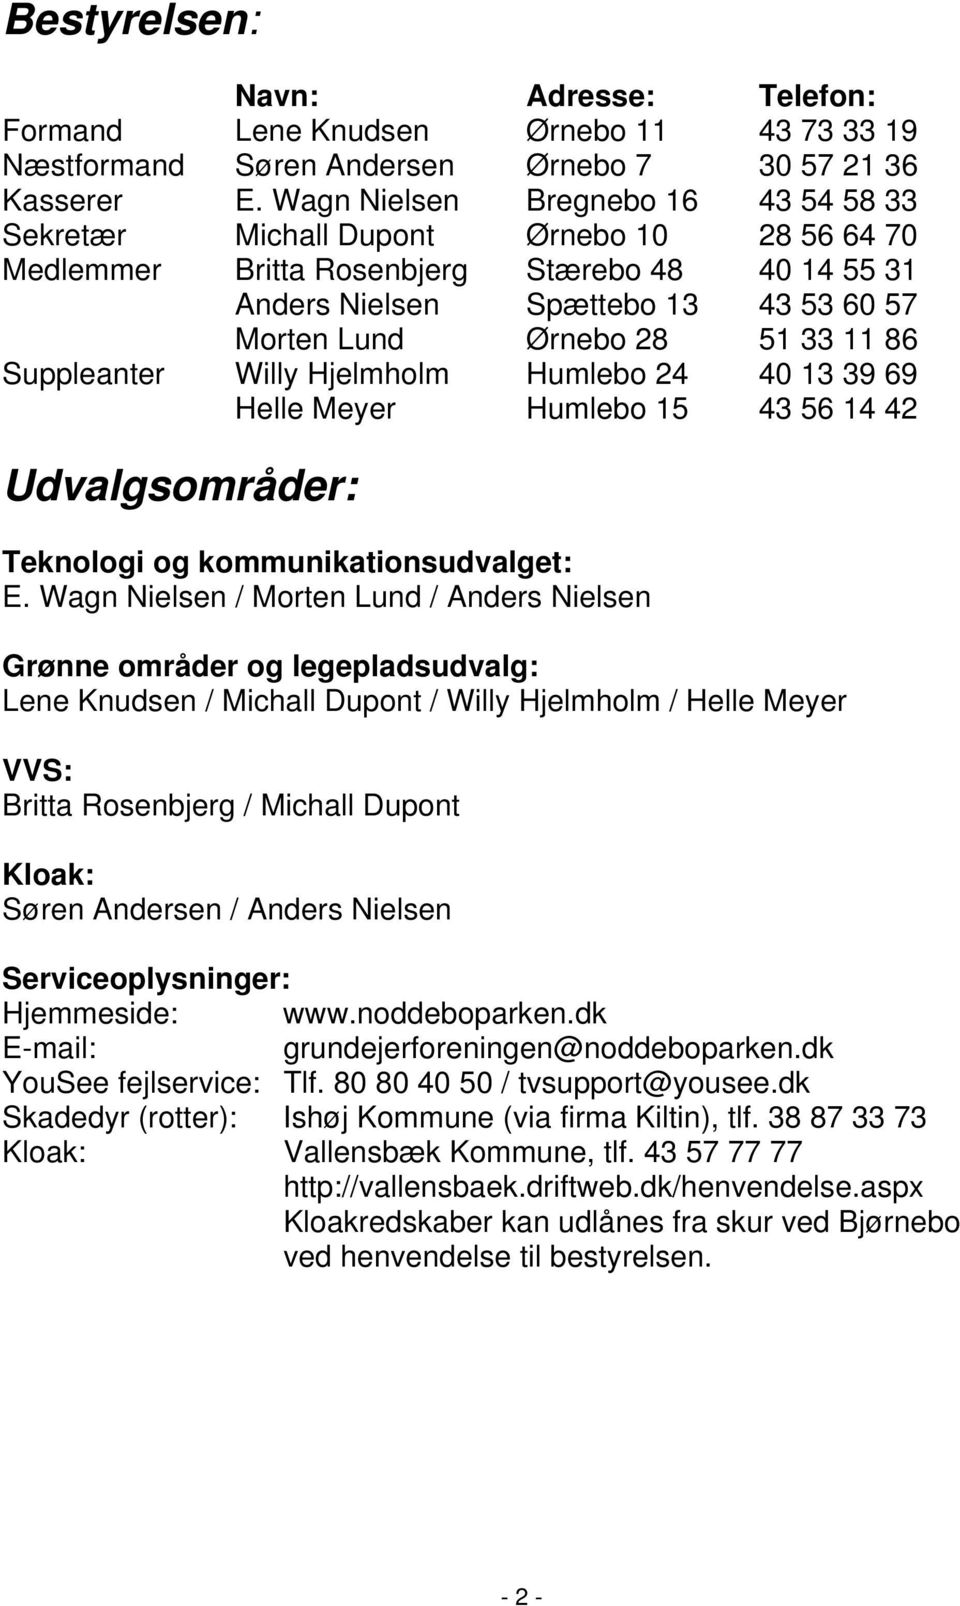 33 11 86 Suppleanter Willy Hjelmholm Humlebo 24 40 13 39 69 Helle Meyer Humlebo 15 43 56 14 42 Udvalgsområder: Teknologi og kommunikationsudvalget: E.